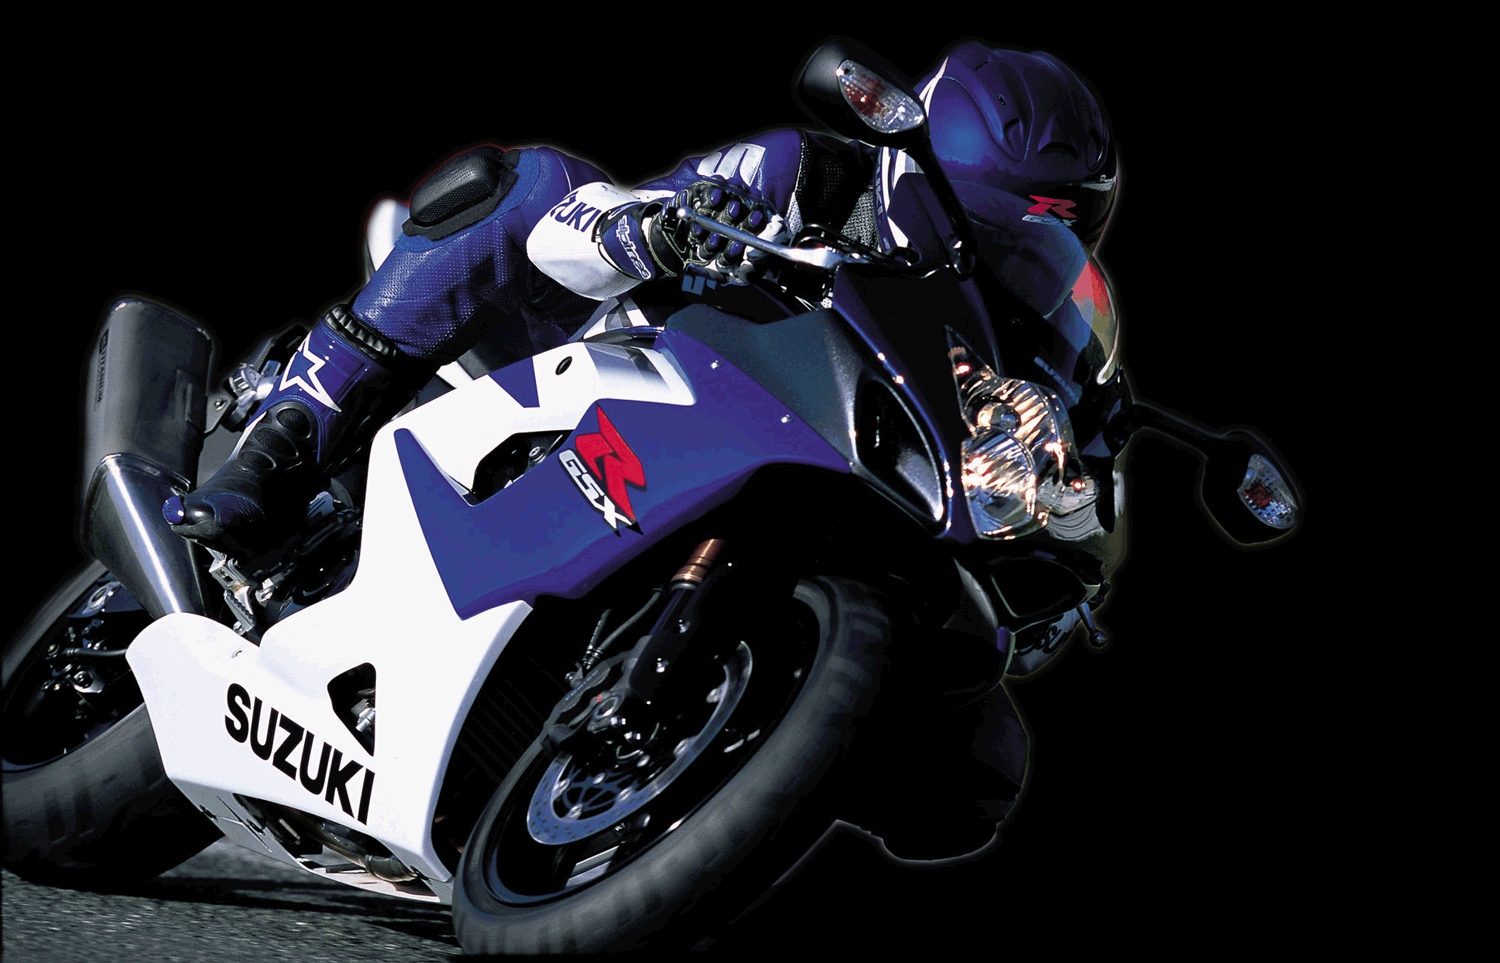 gsxr #suzuki #motorcycle #bikelife #louisvuitton #louisv #explore #vi